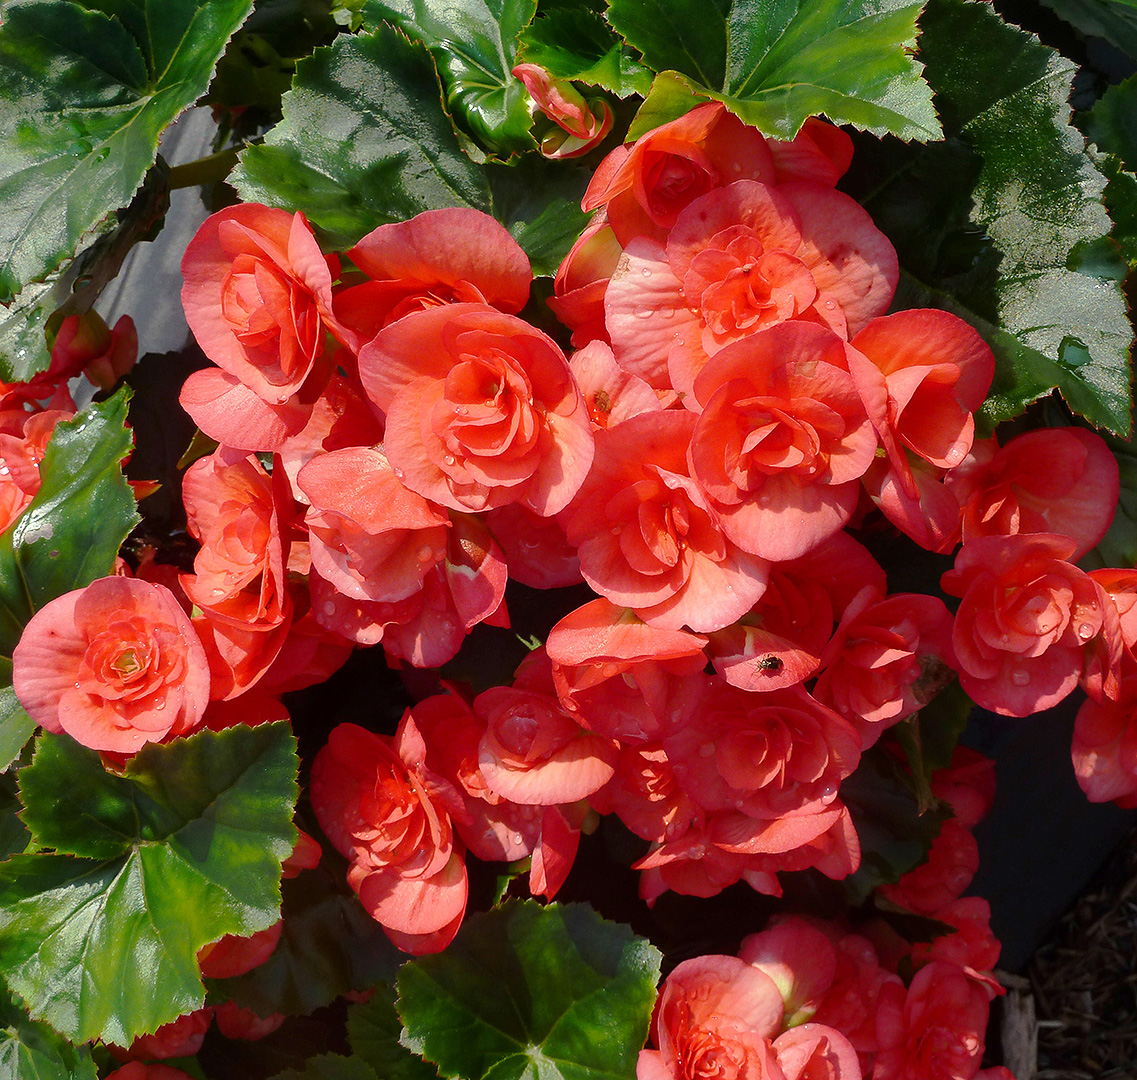 زهرة البيجونيا وهي من أجمل الزهرات المنزلية